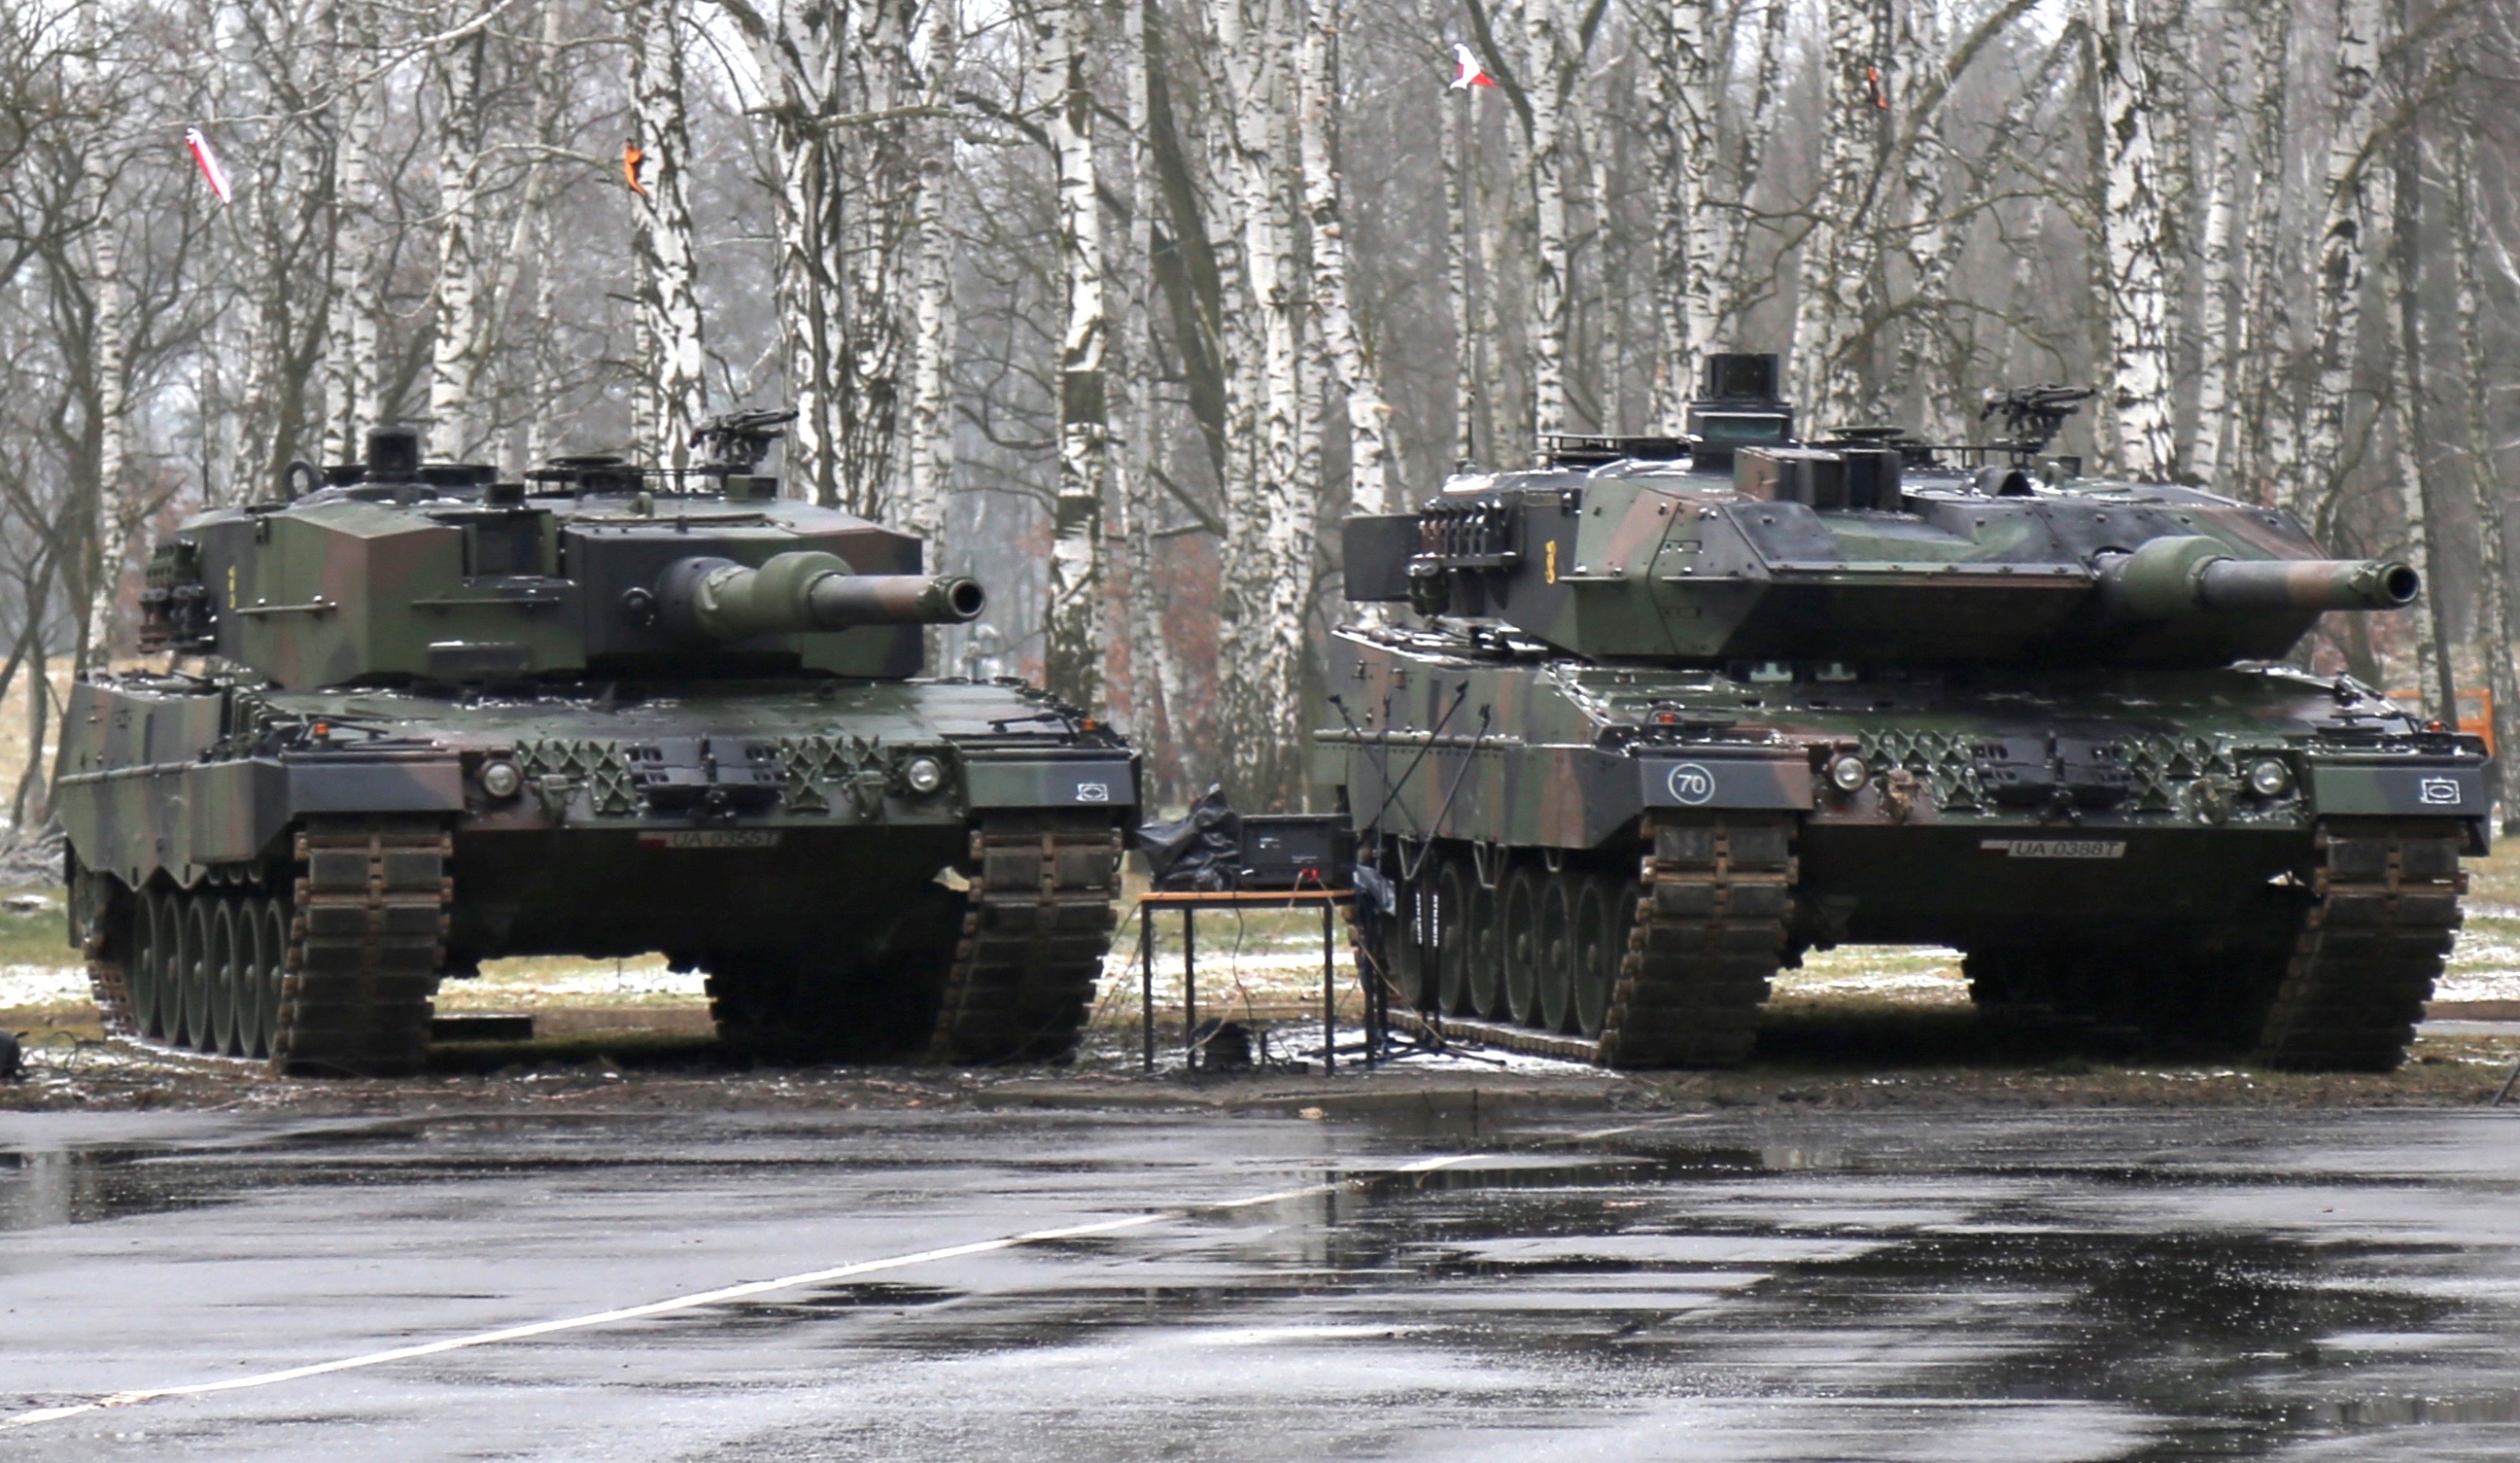 Czołgi Leopard 2A4 (po lewej) i Leopard 2A5 z 1 Warszawskiej Brygady Pancernej w Warszawie-Wesołej. Fot. Rafał Lesiecki / Defence24.pl